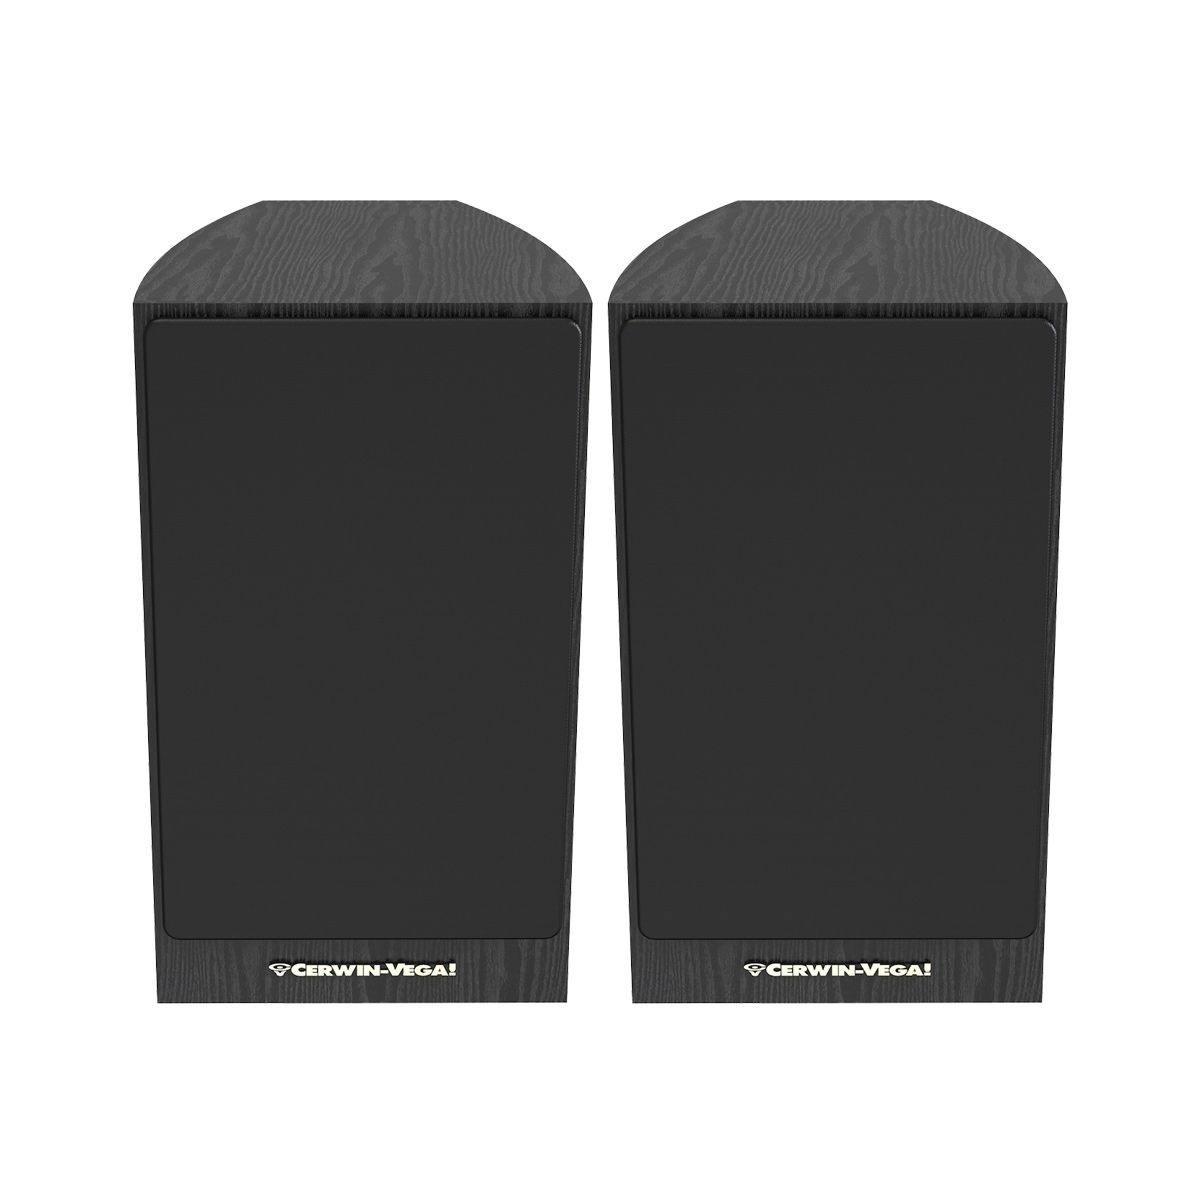 Cerwin Vega LA Series 6.5" 2-Way Bookshelf Speakers (Pair)